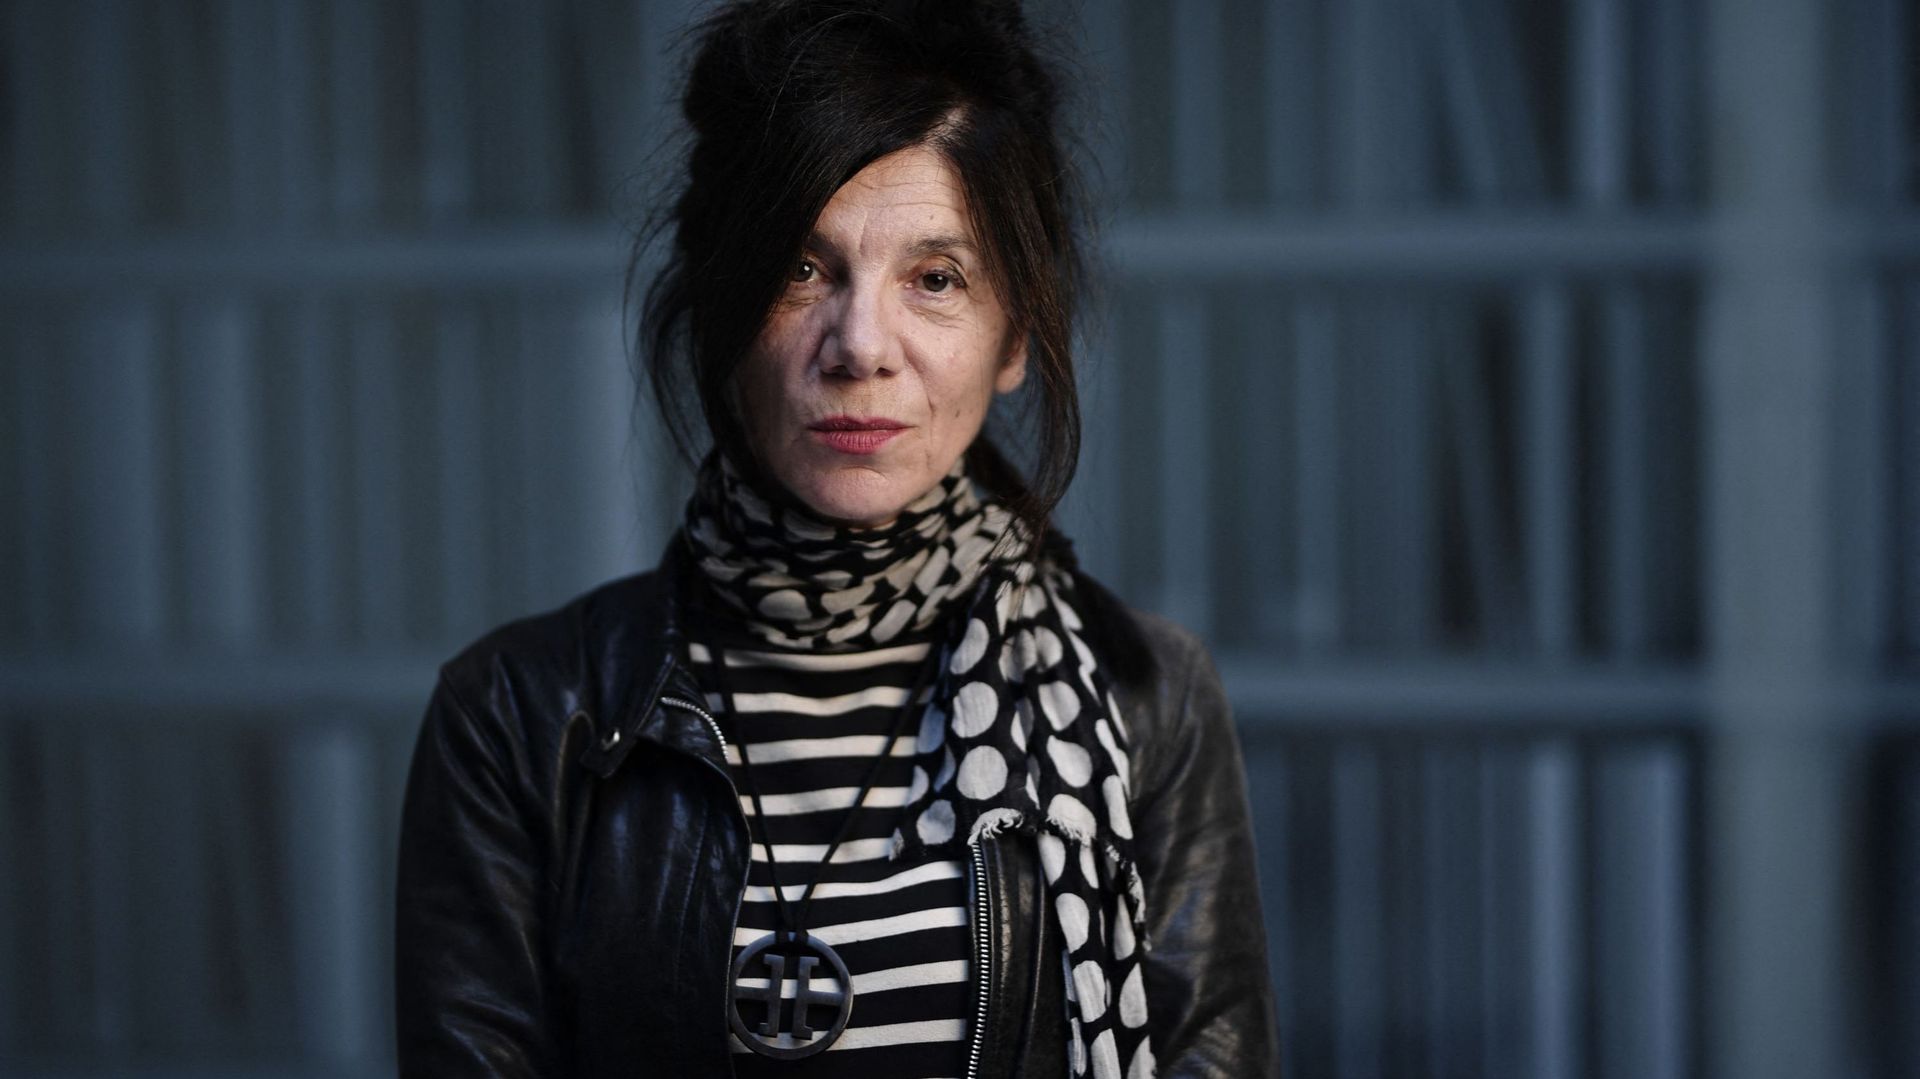 Brigitte Giraud remporte le Goncourt 2022 pour son roman "Vivre vite"